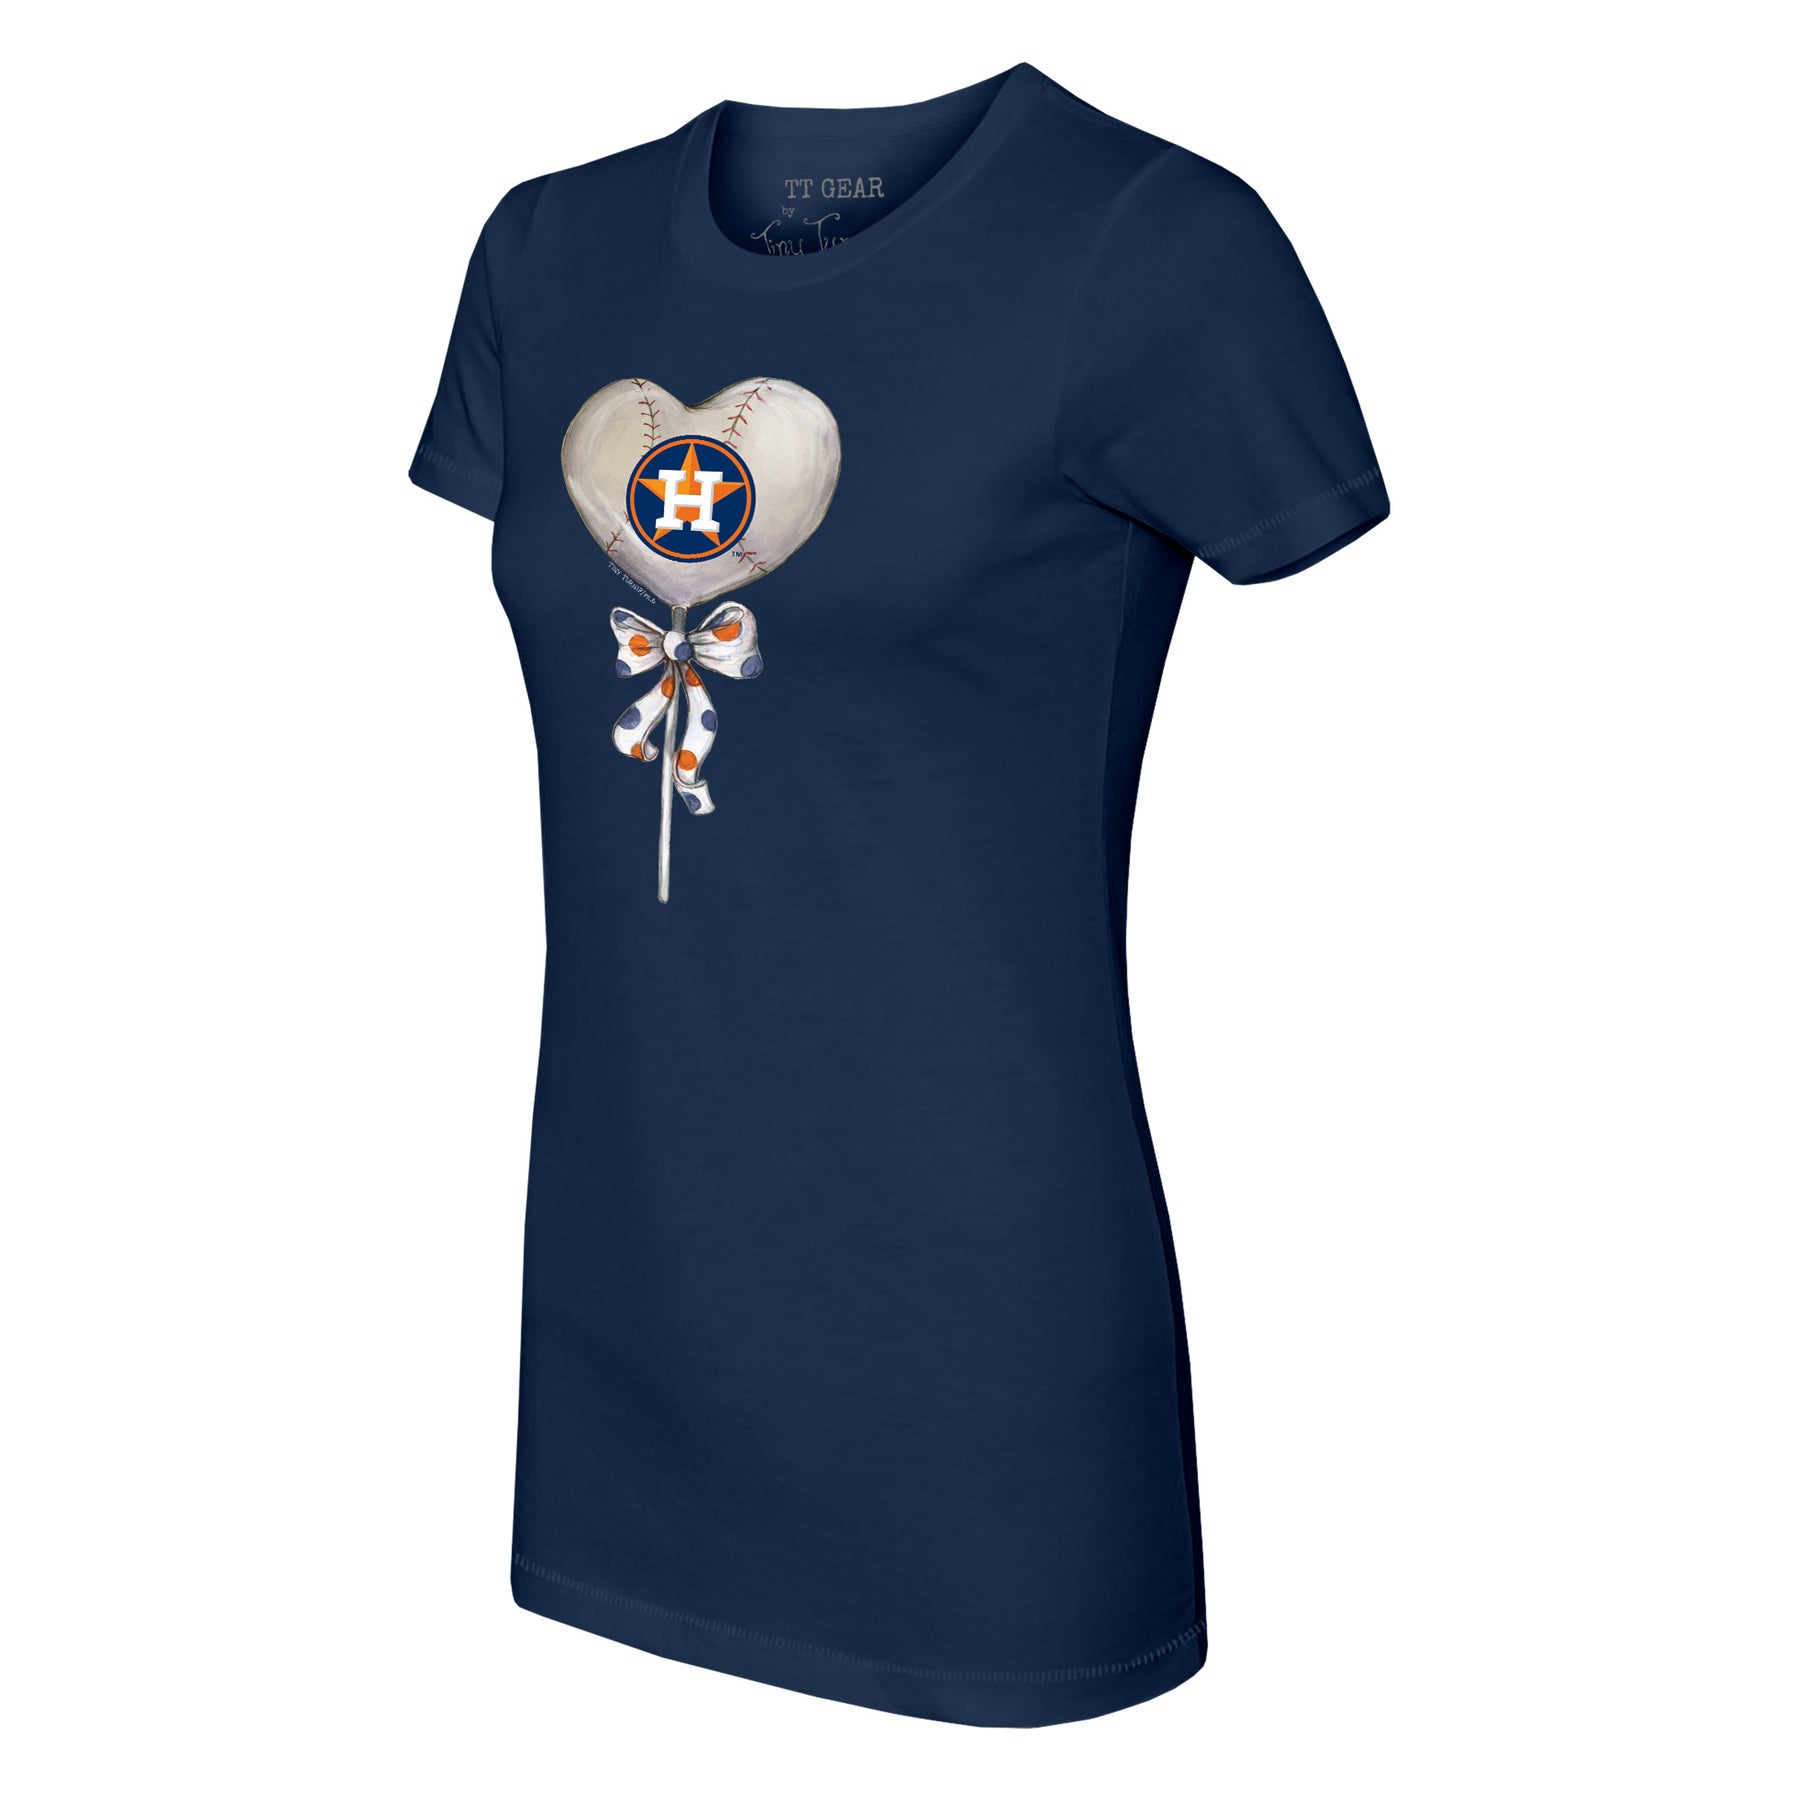 Houston Astros Heart Lolly Tee Shirt